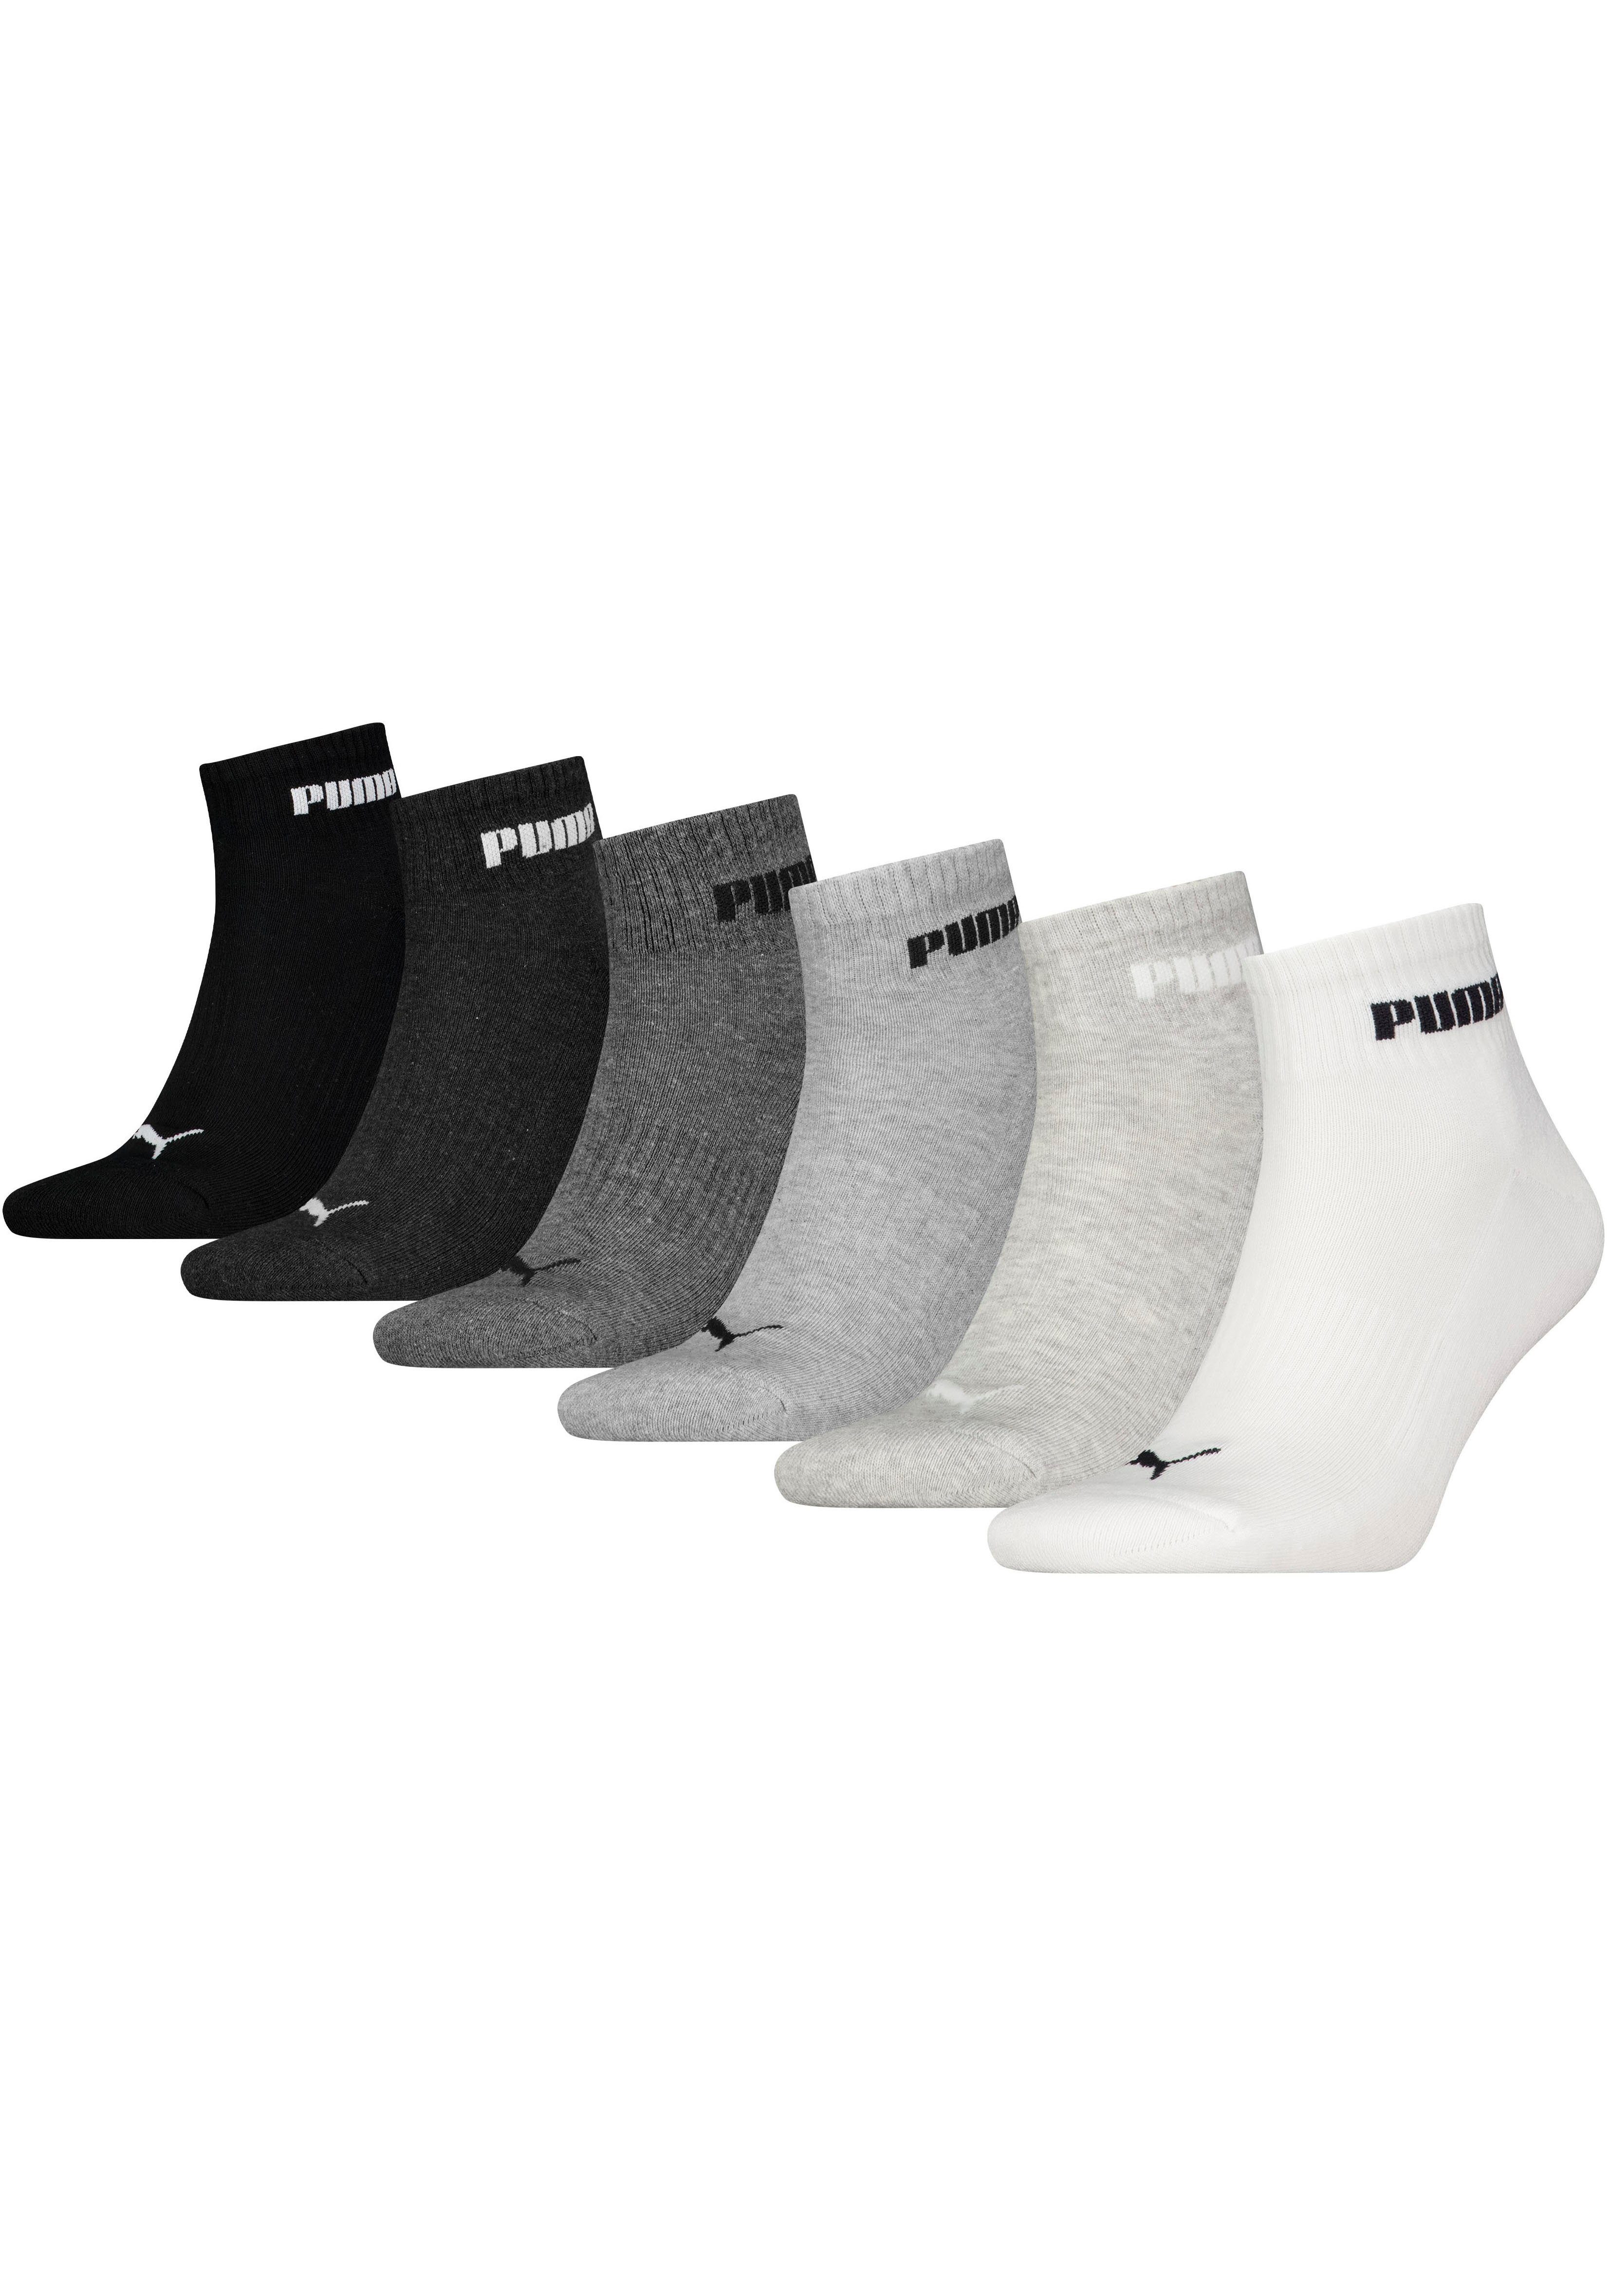 Puma sokken set van 6 grijs zwart